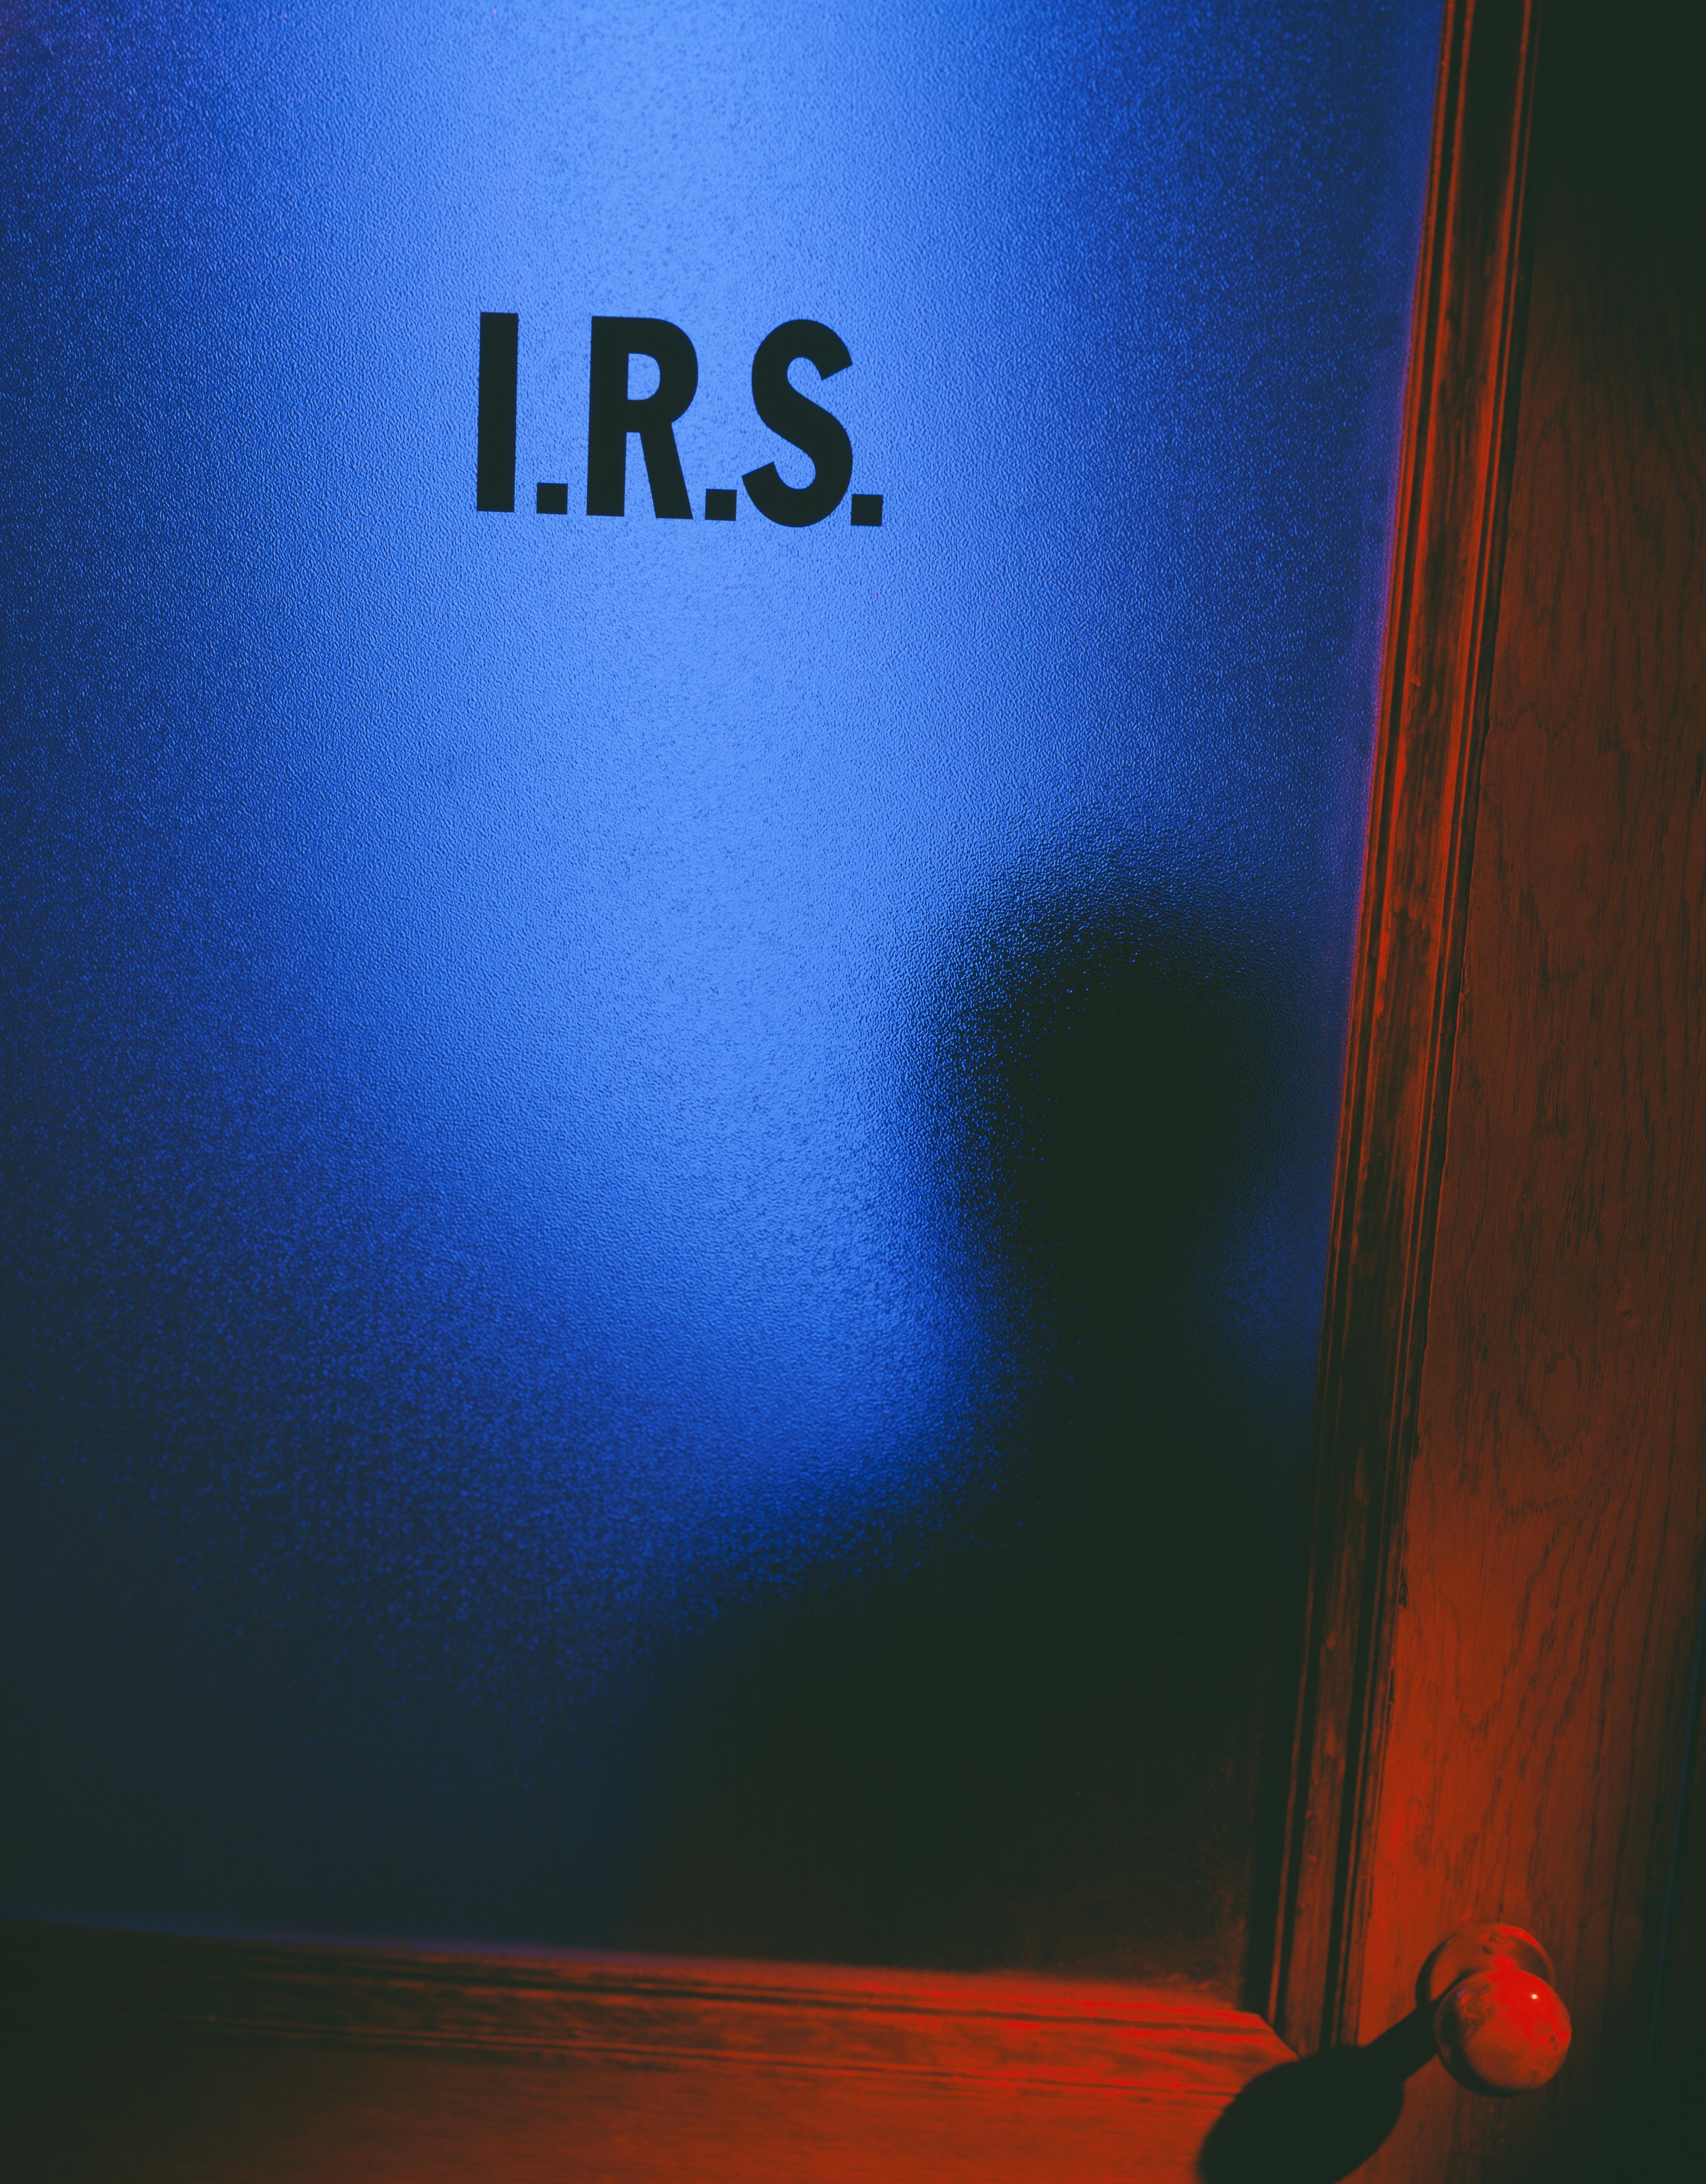 IRS office door